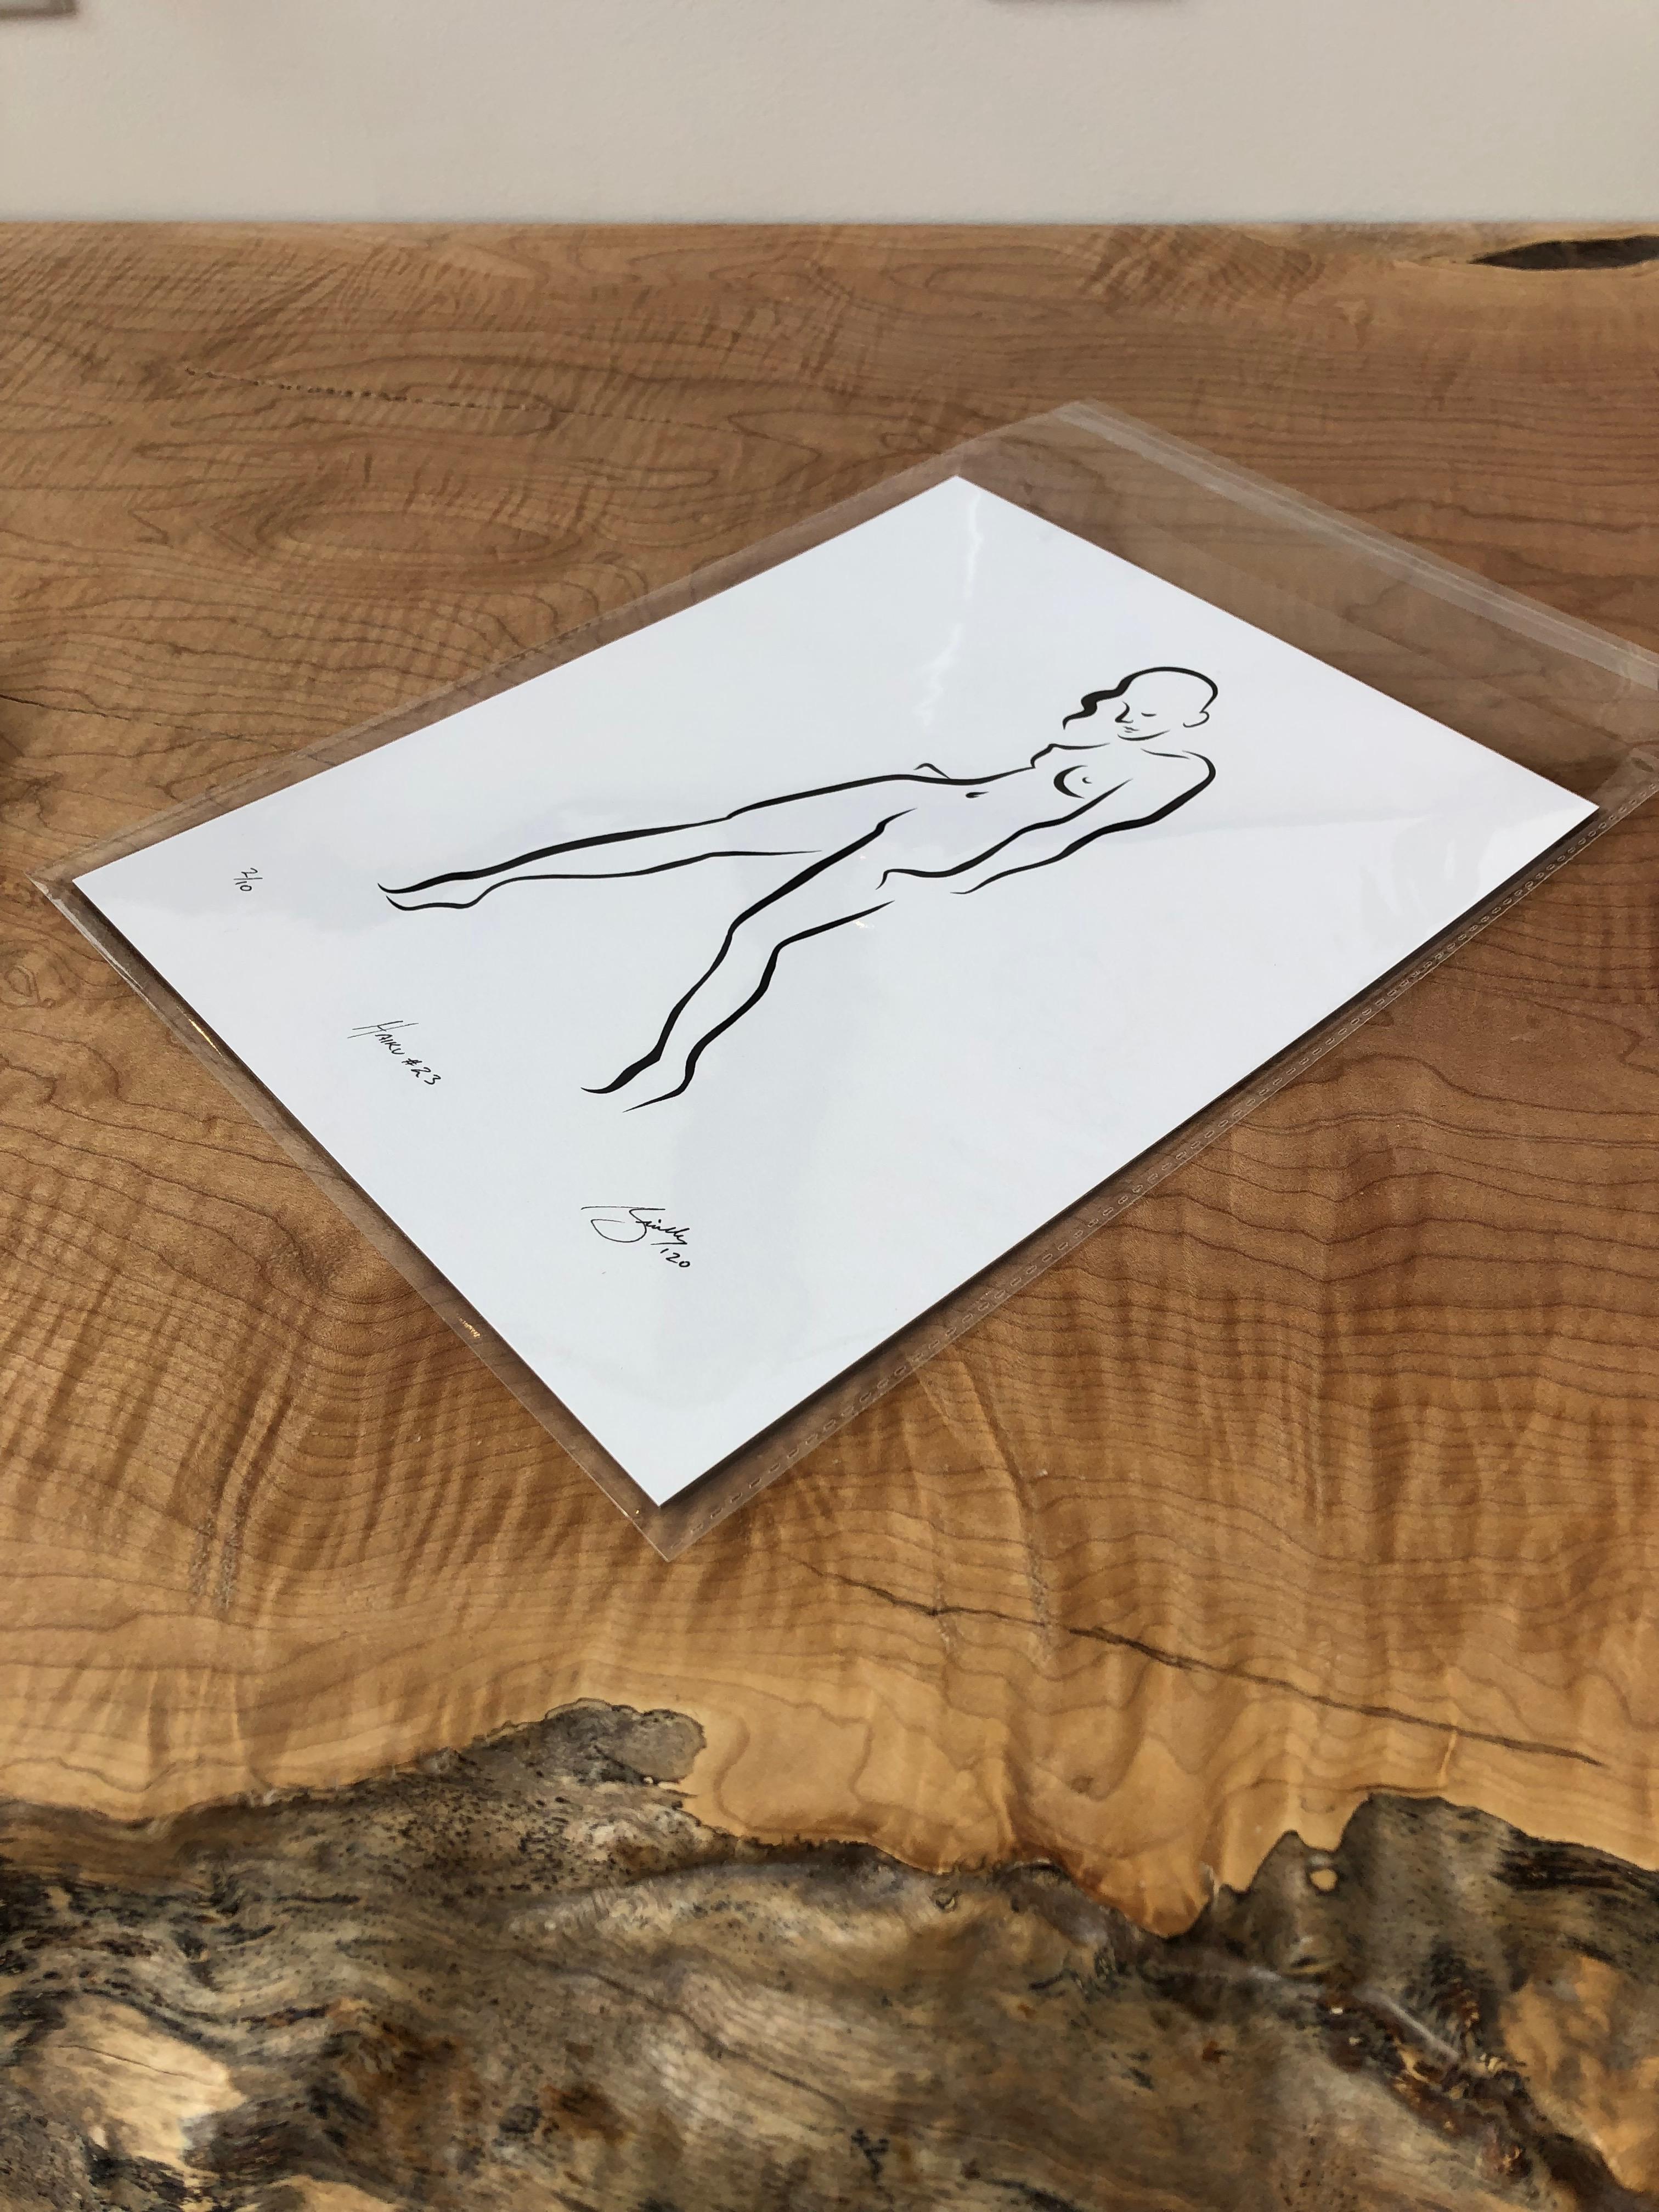 Haiku n° 23, 2/50 - Dessin numérique représentant une femme nue debout  - Print de Michael Binkley